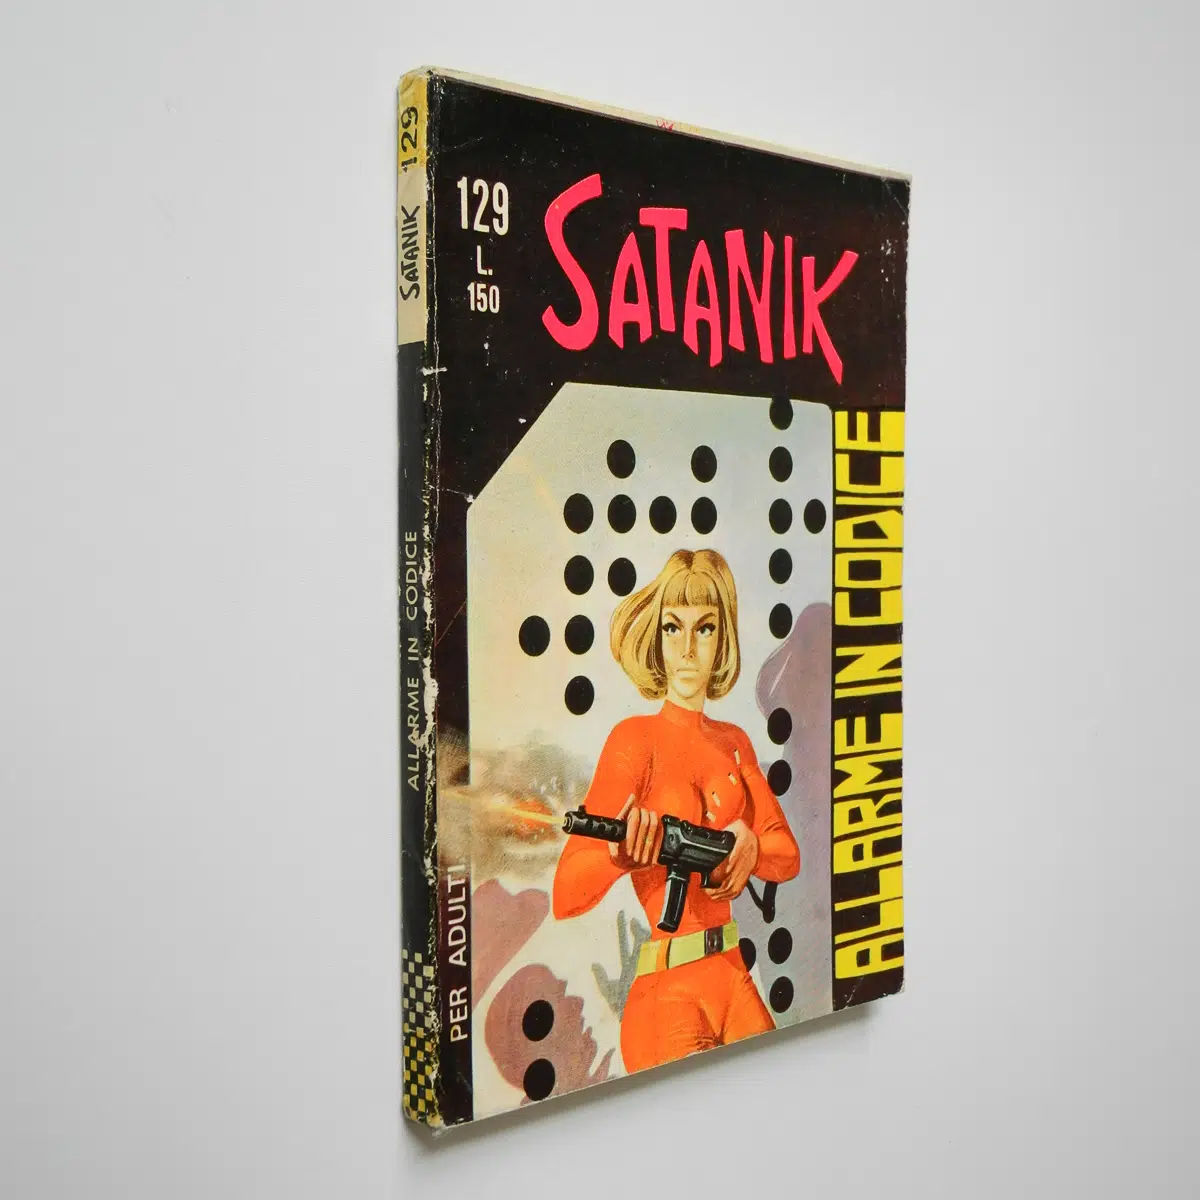 Satanik n. 129 originale